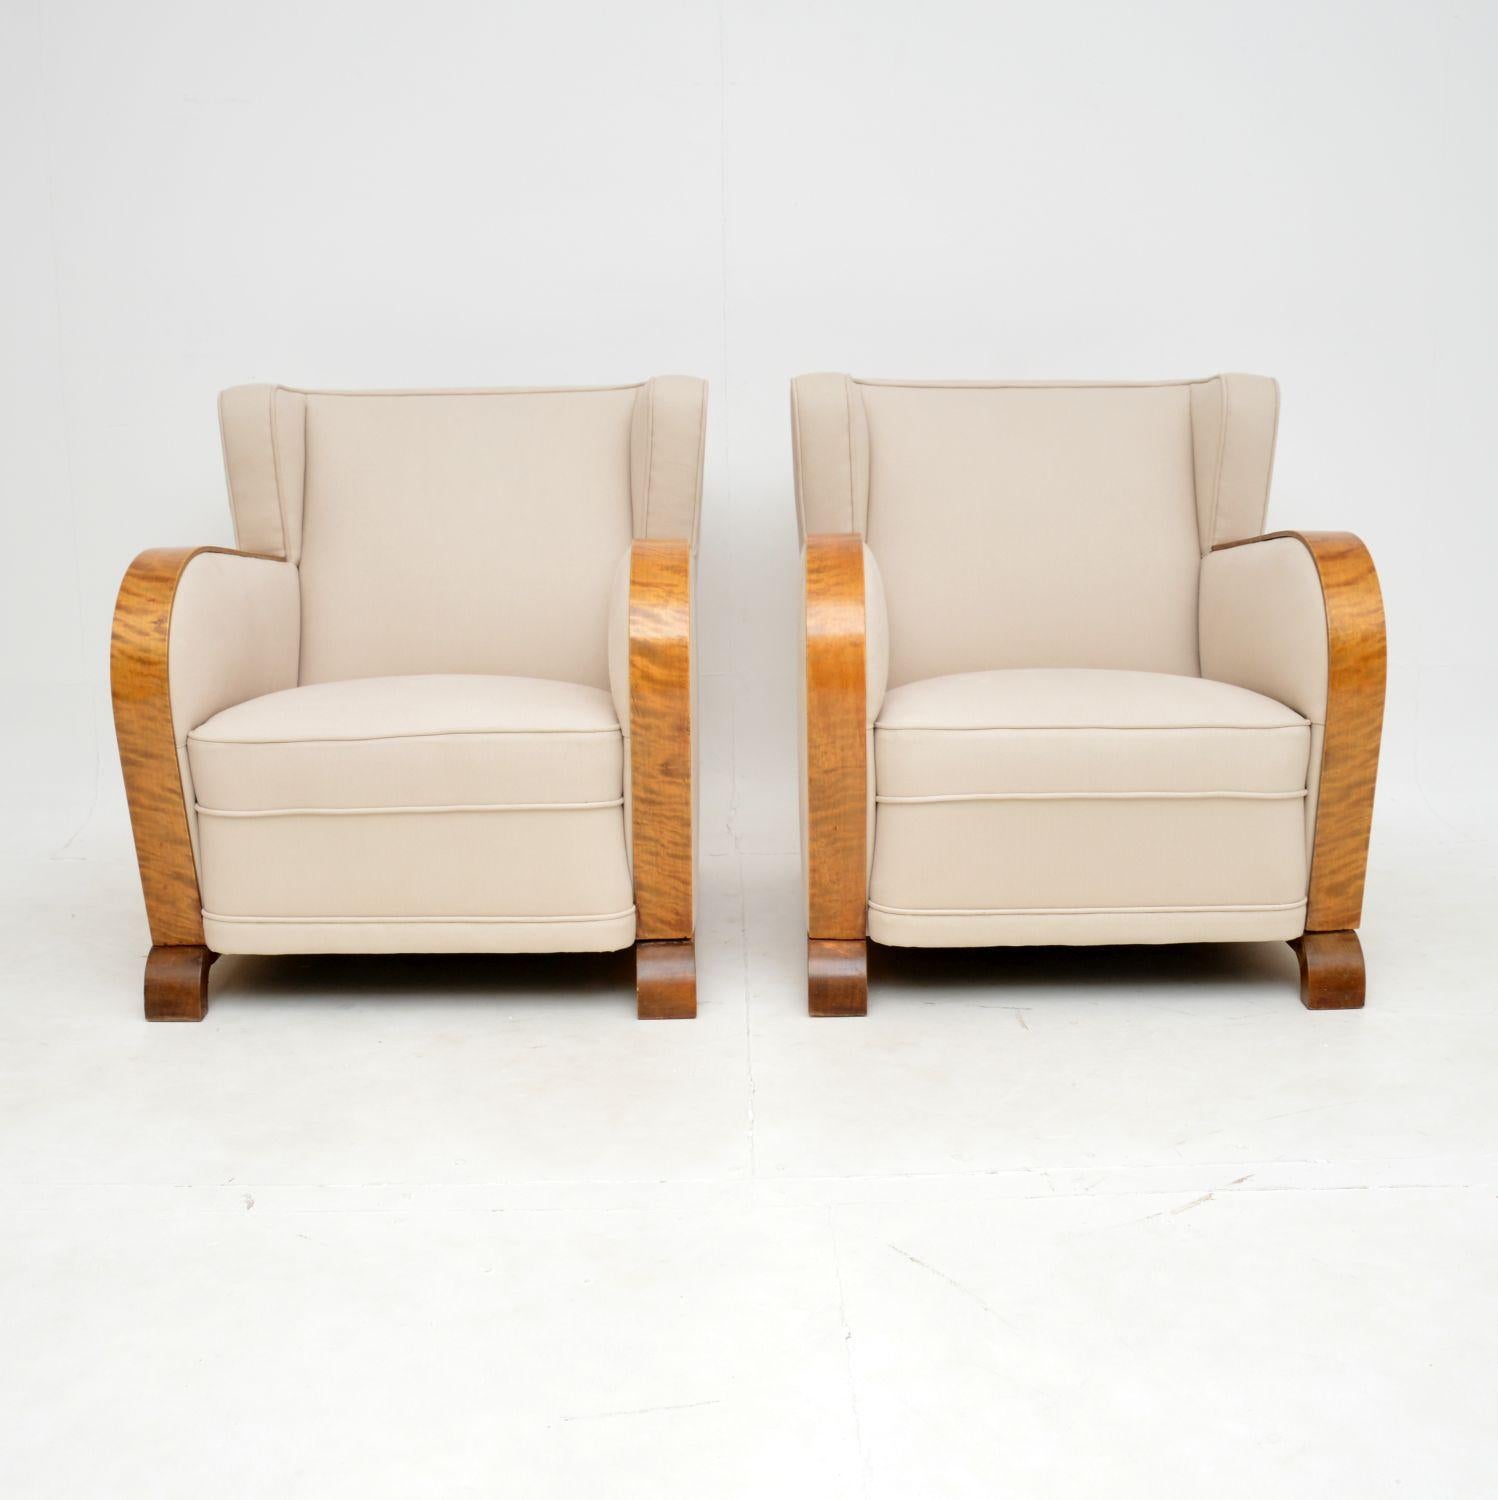 Ein hervorragendes Paar originaler Art-Déco-Sessel aus satinierter Birke. Wir haben sie aus Schweden mitgebracht, aber wir glauben, dass sie in Finnland hergestellt wurden, und sie stammen aus den 1920-30er Jahren.

Die Qualität ist hervorragend,